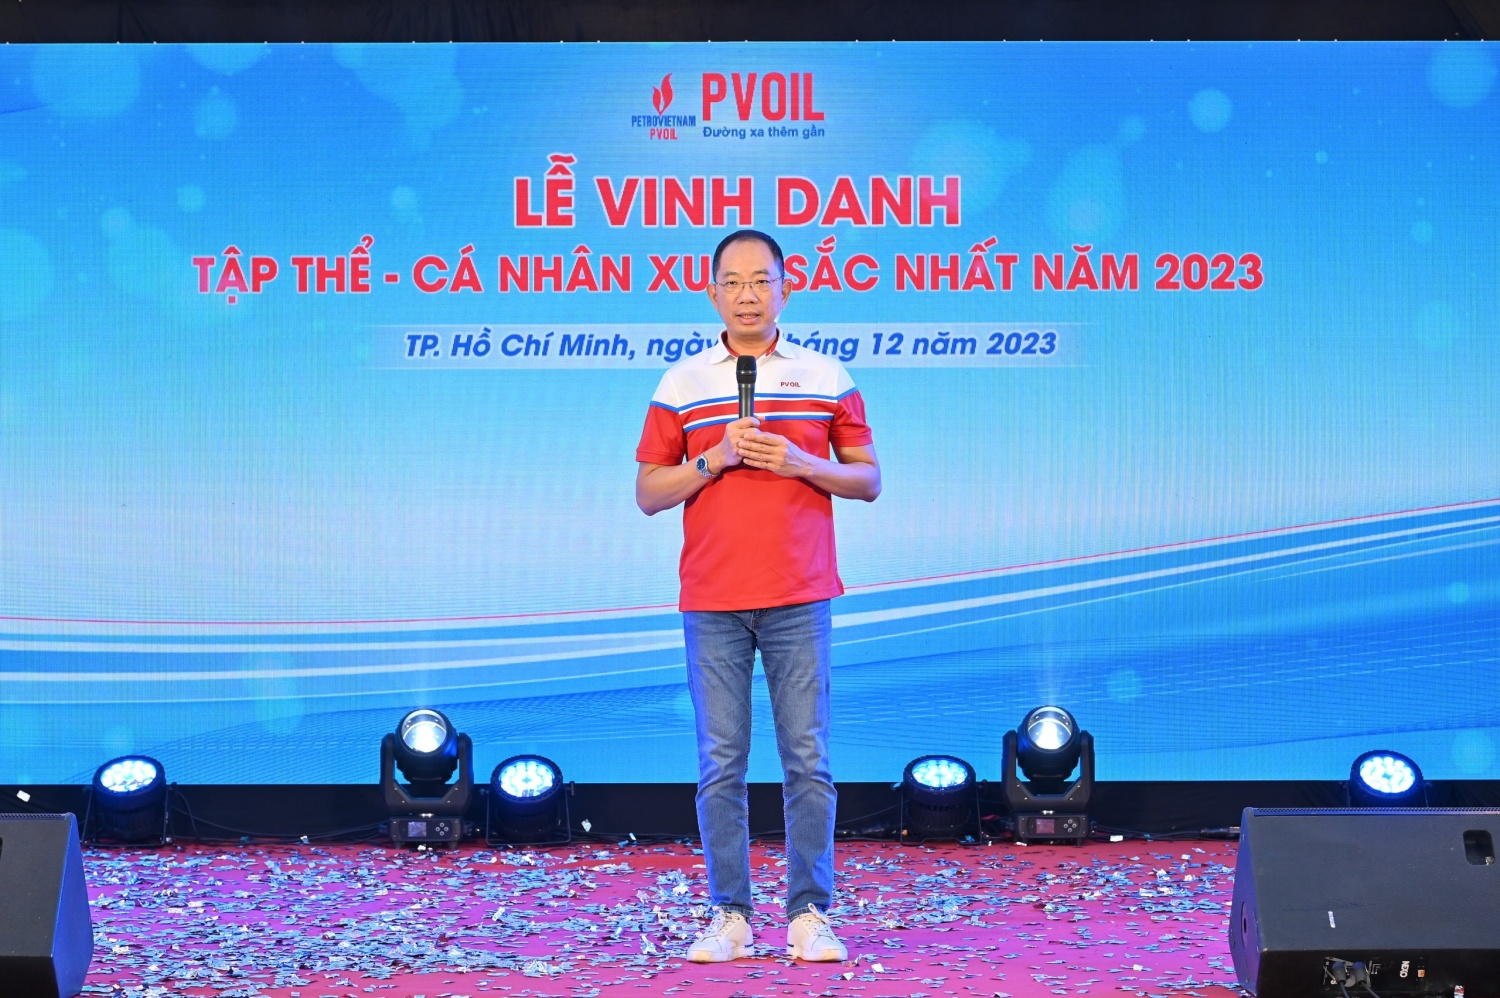 Ông Cao Hoài Dương - Bí thư Đảng ủy, Chủ tịch HĐQT PVOIL phát biểu chúc mừng các tập thể, cá nhân xuất sắc nhất năm 2023